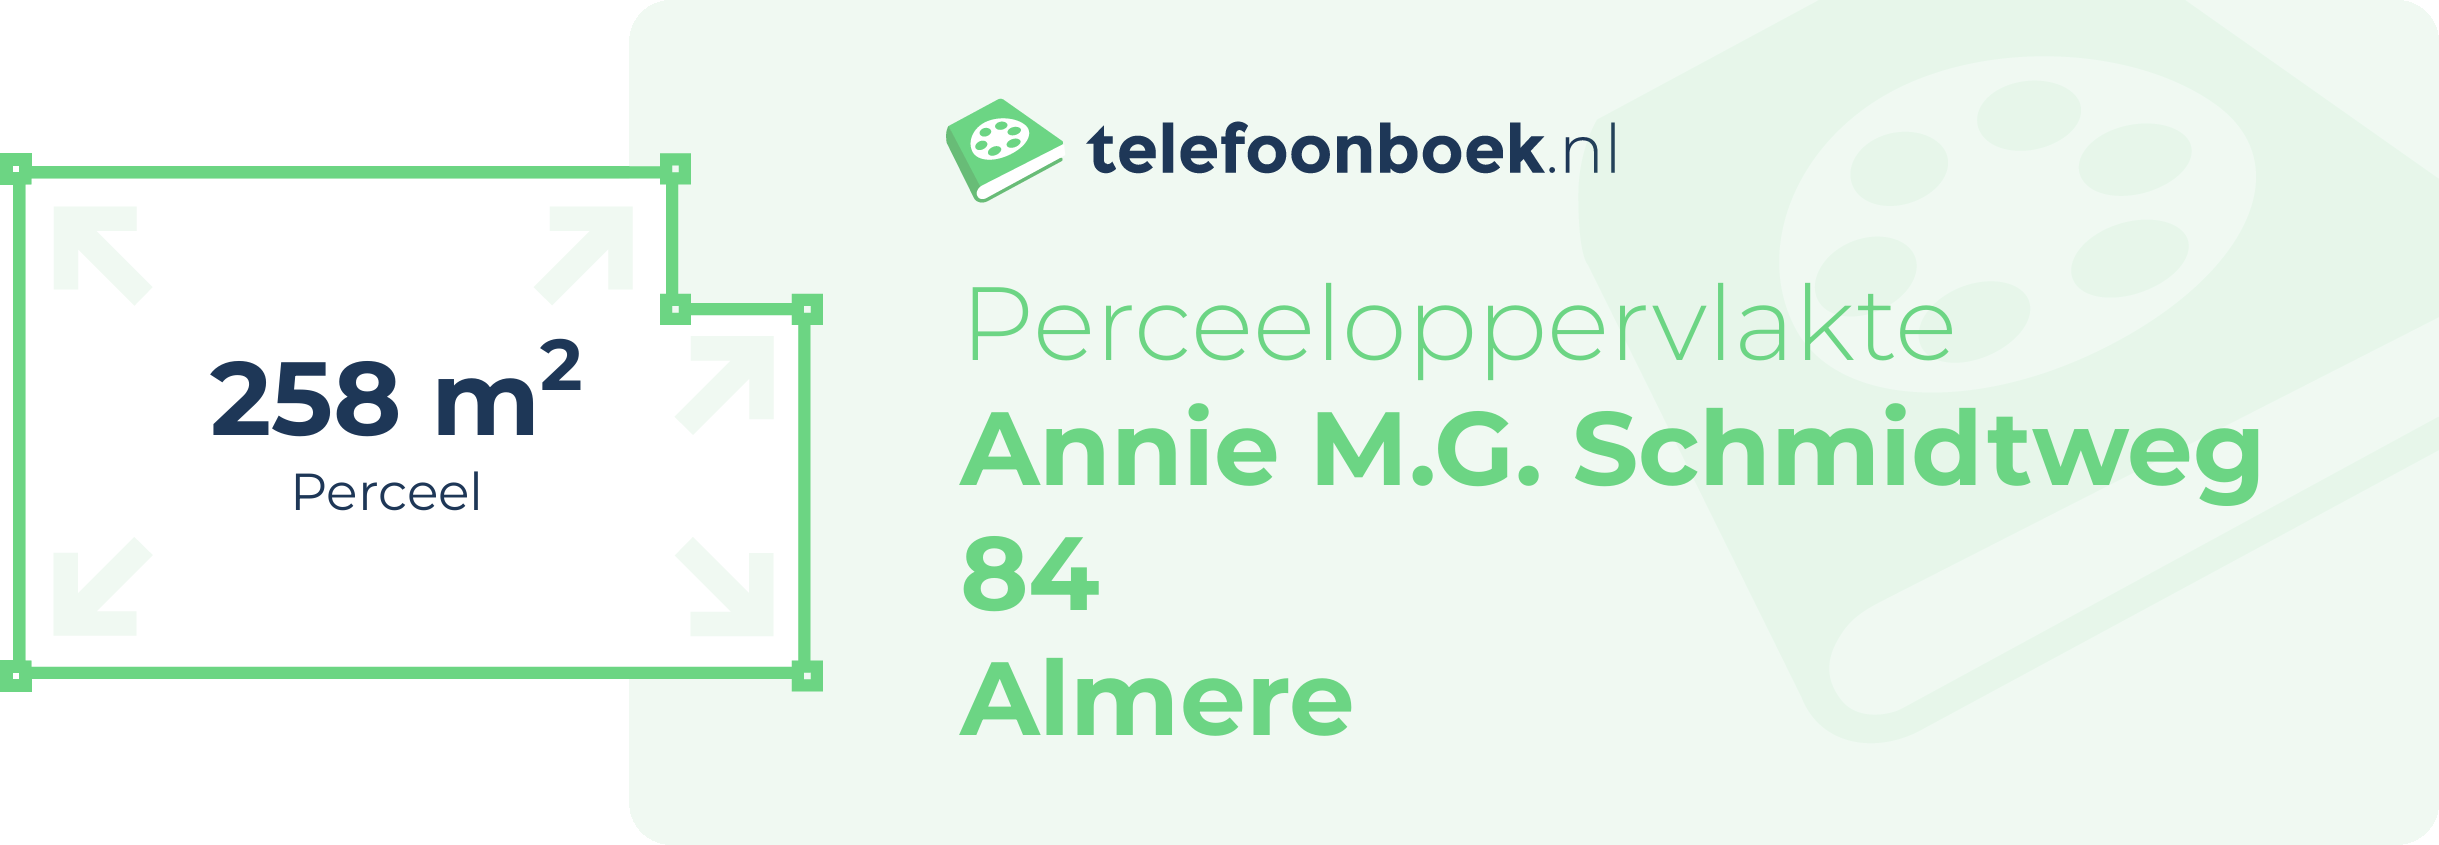 Perceeloppervlakte Annie M.G. Schmidtweg 84 Almere